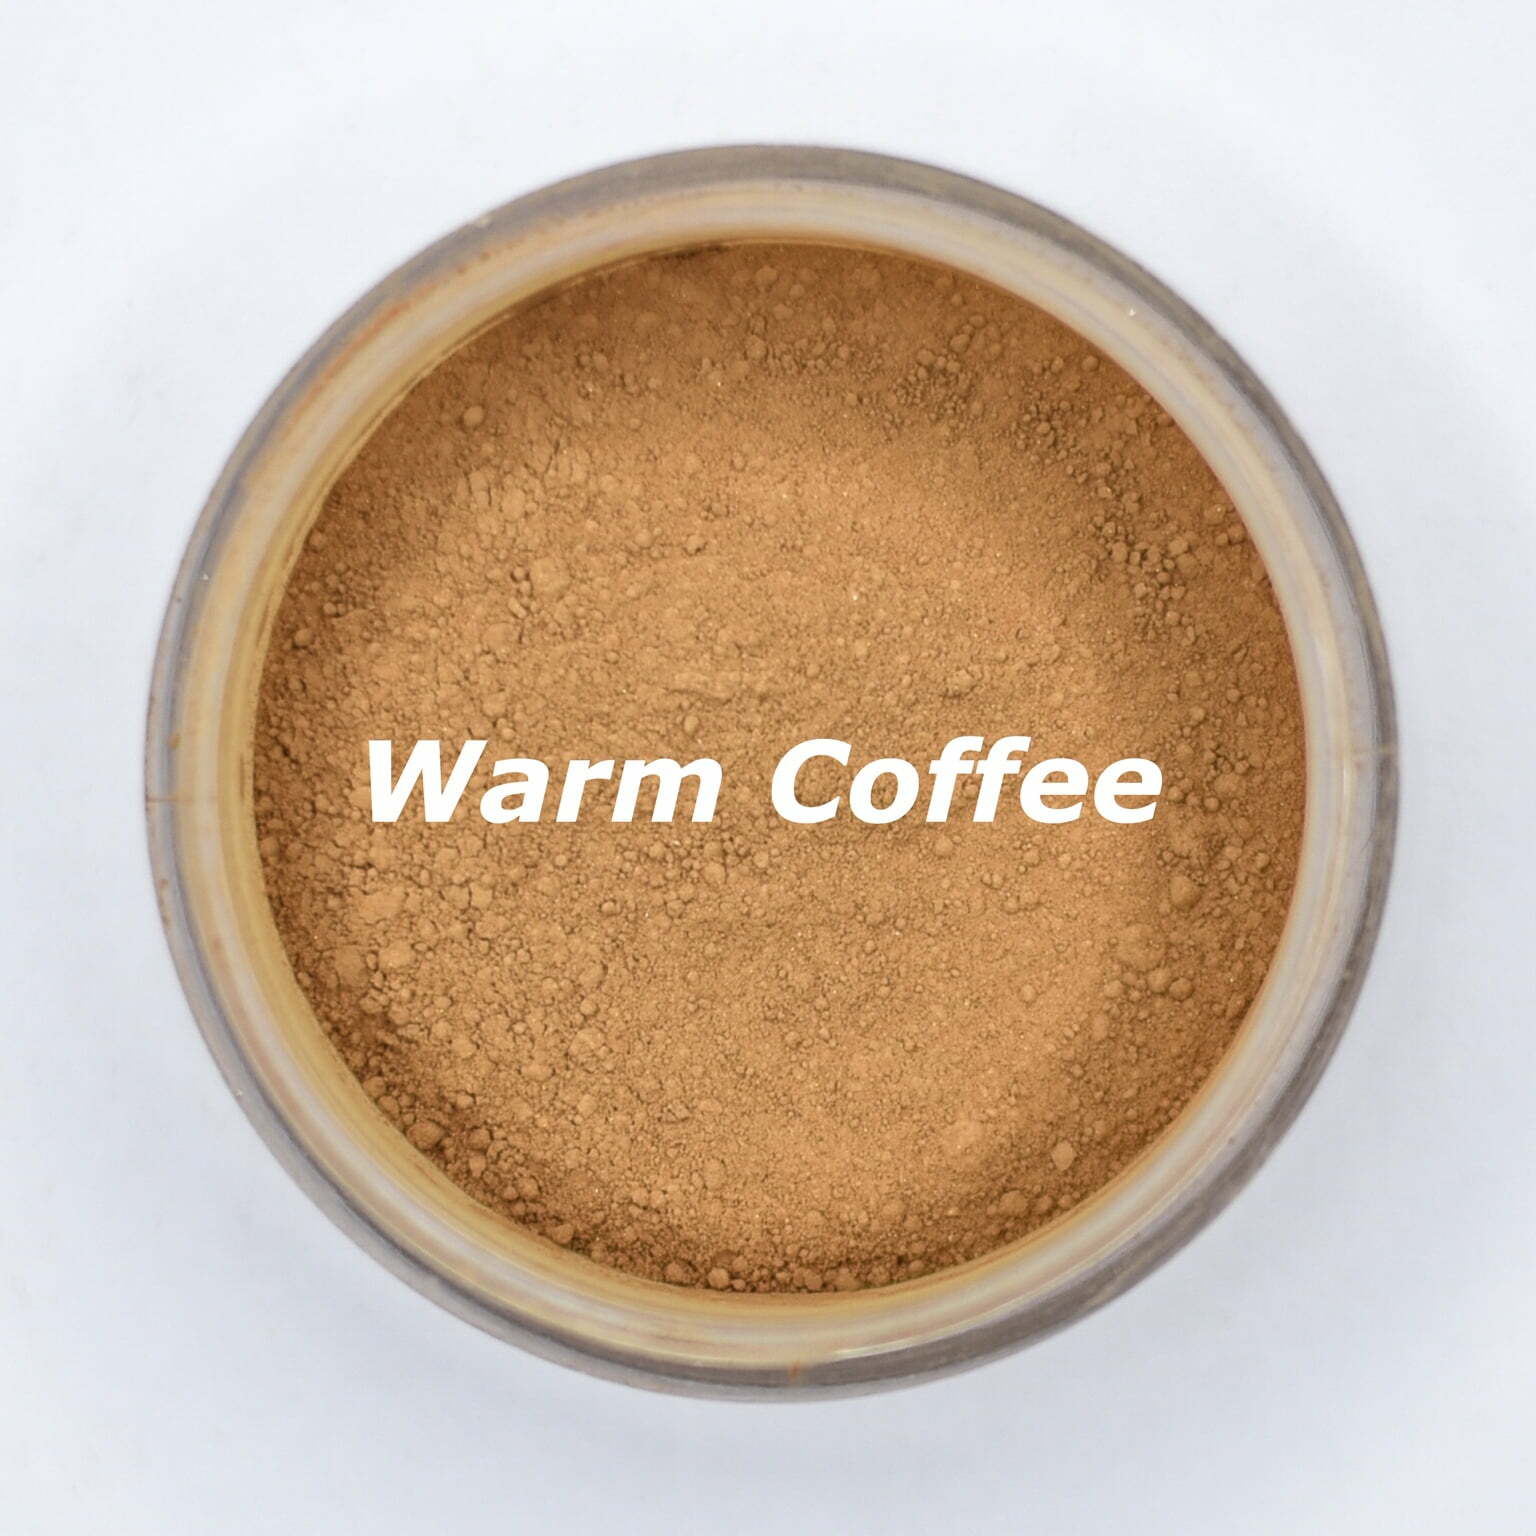 warm coffee foundation shade